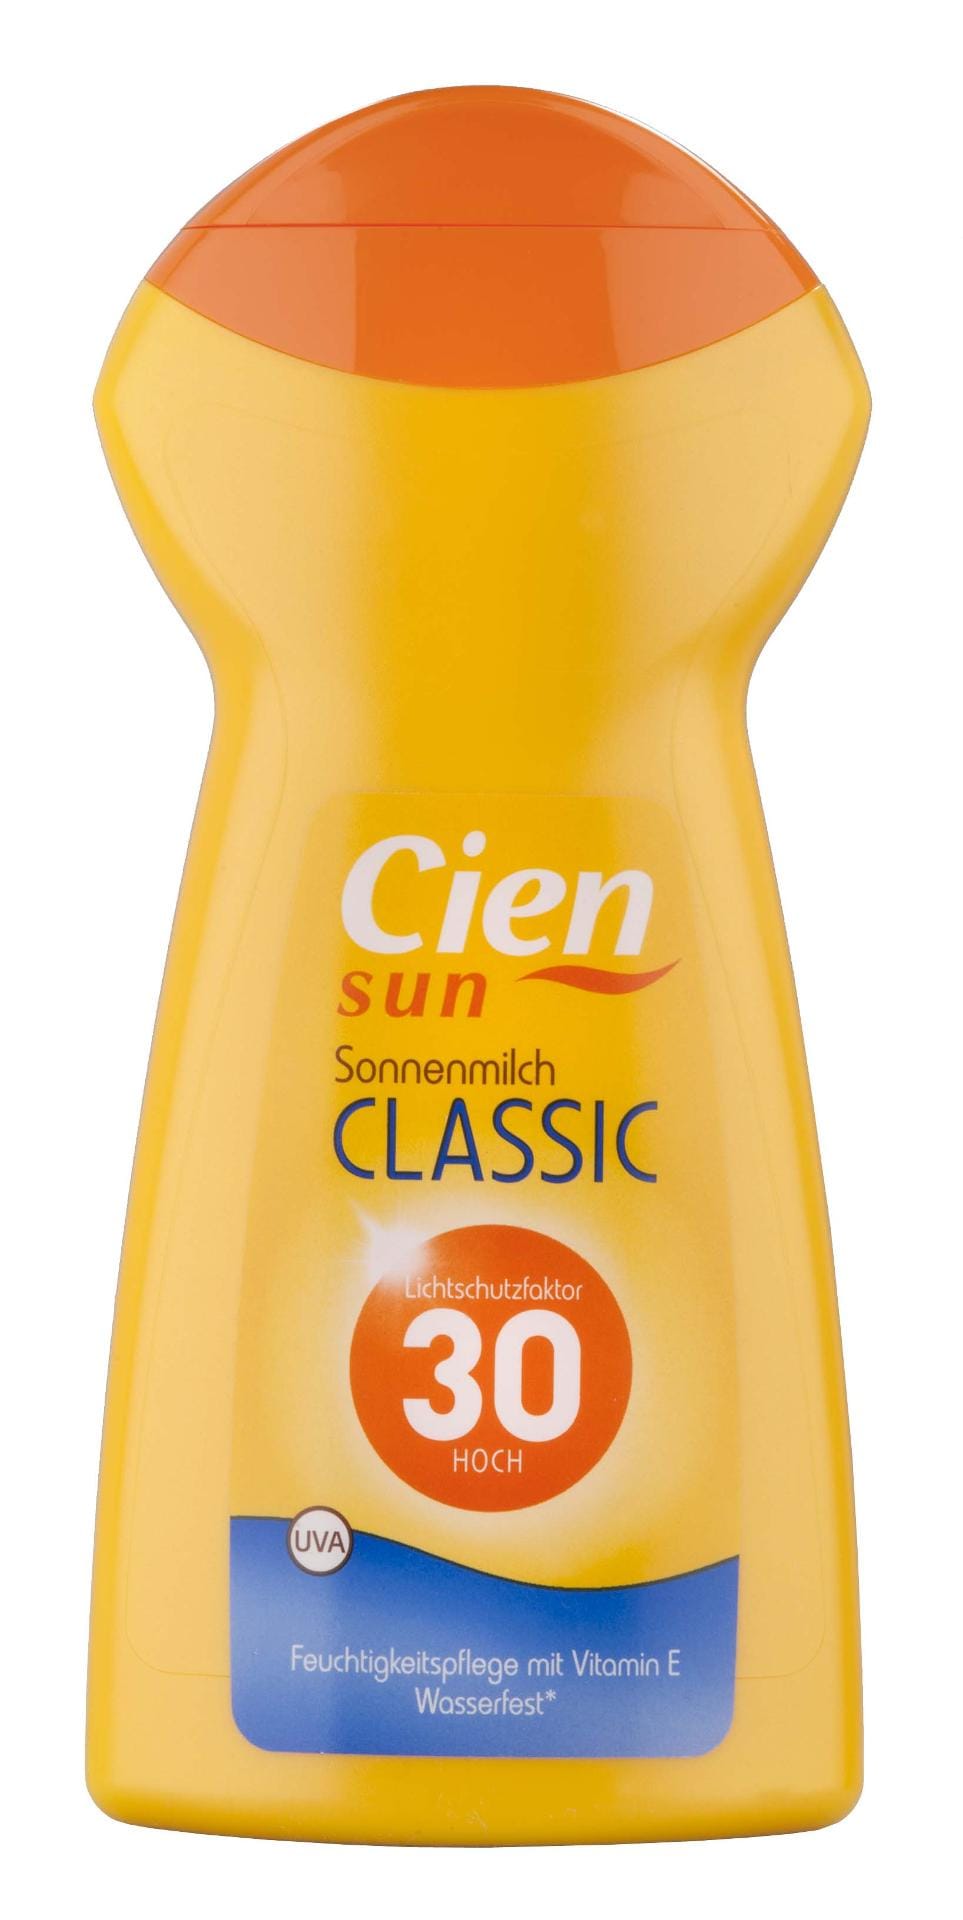 Die "Cien Sun Sonnenmilch Classic" von Lidl bietet verlässlichen UV-Schutz zu einem kleinen Preis (1,16 Euro pro 100 Milliliter). Das Urteil der Tester lautet "Gut" (Note 1,6).